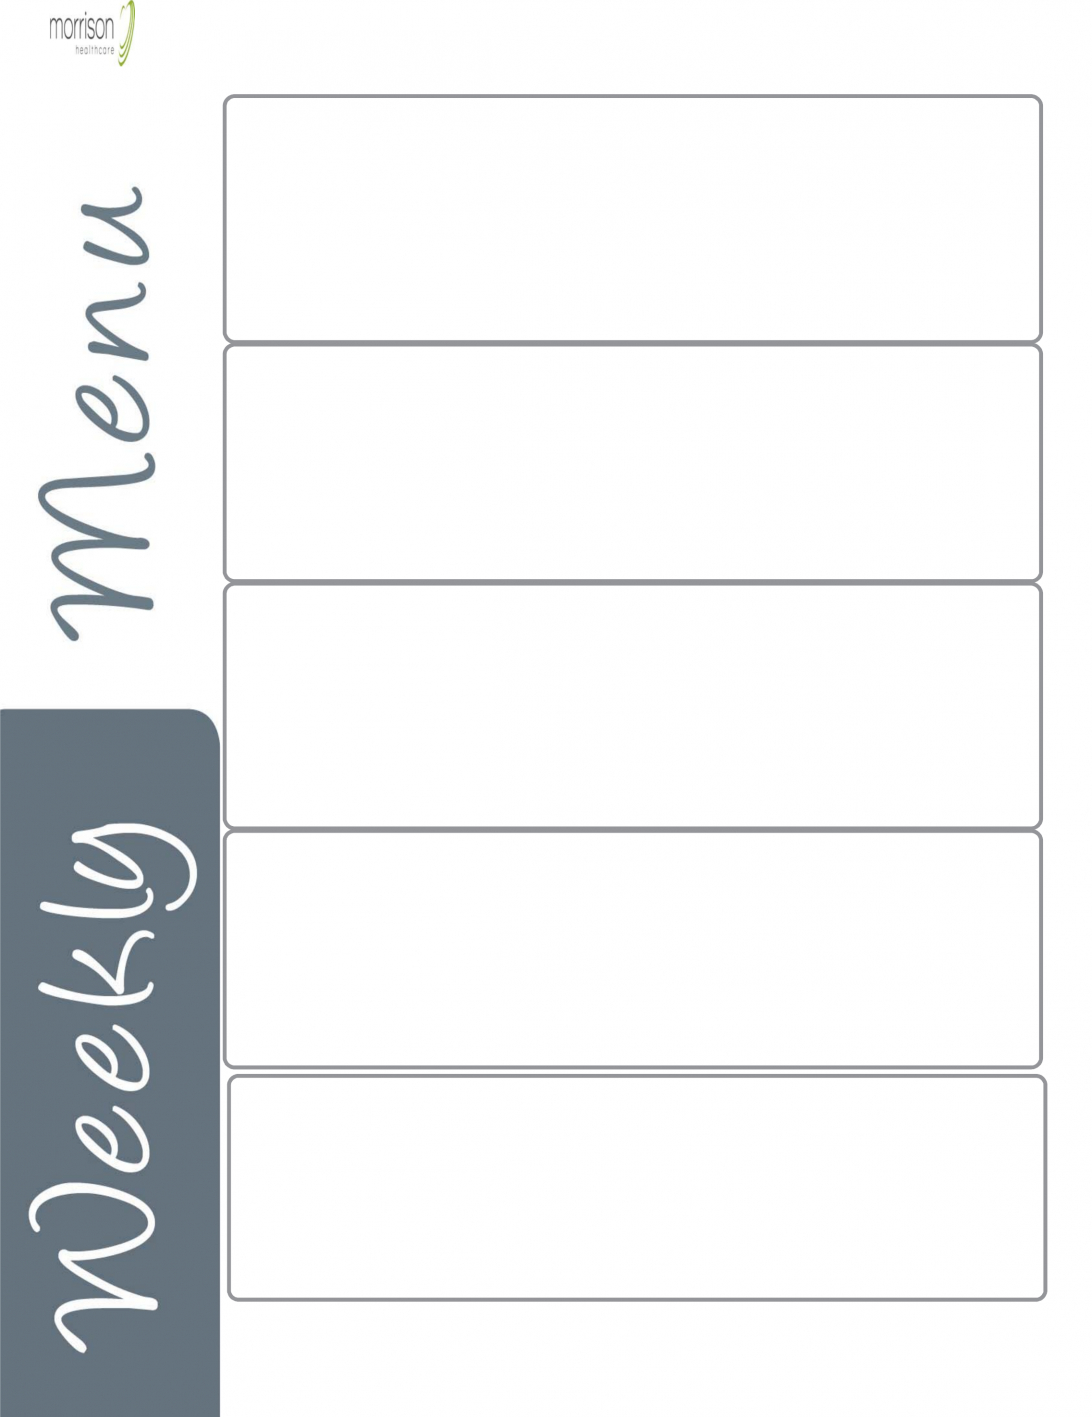 Blank Weekly Menu Template Pdf Dinner Printable Planner Regarding Blank Html Templates Free Download